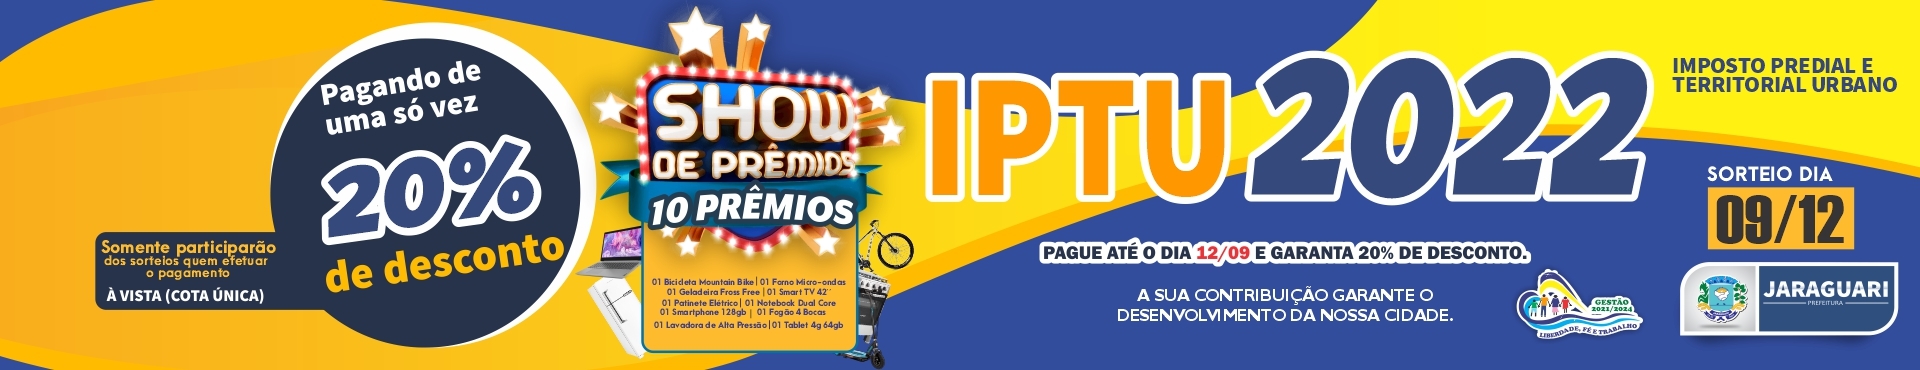 IPTU 2022 com Show de Prêmios!